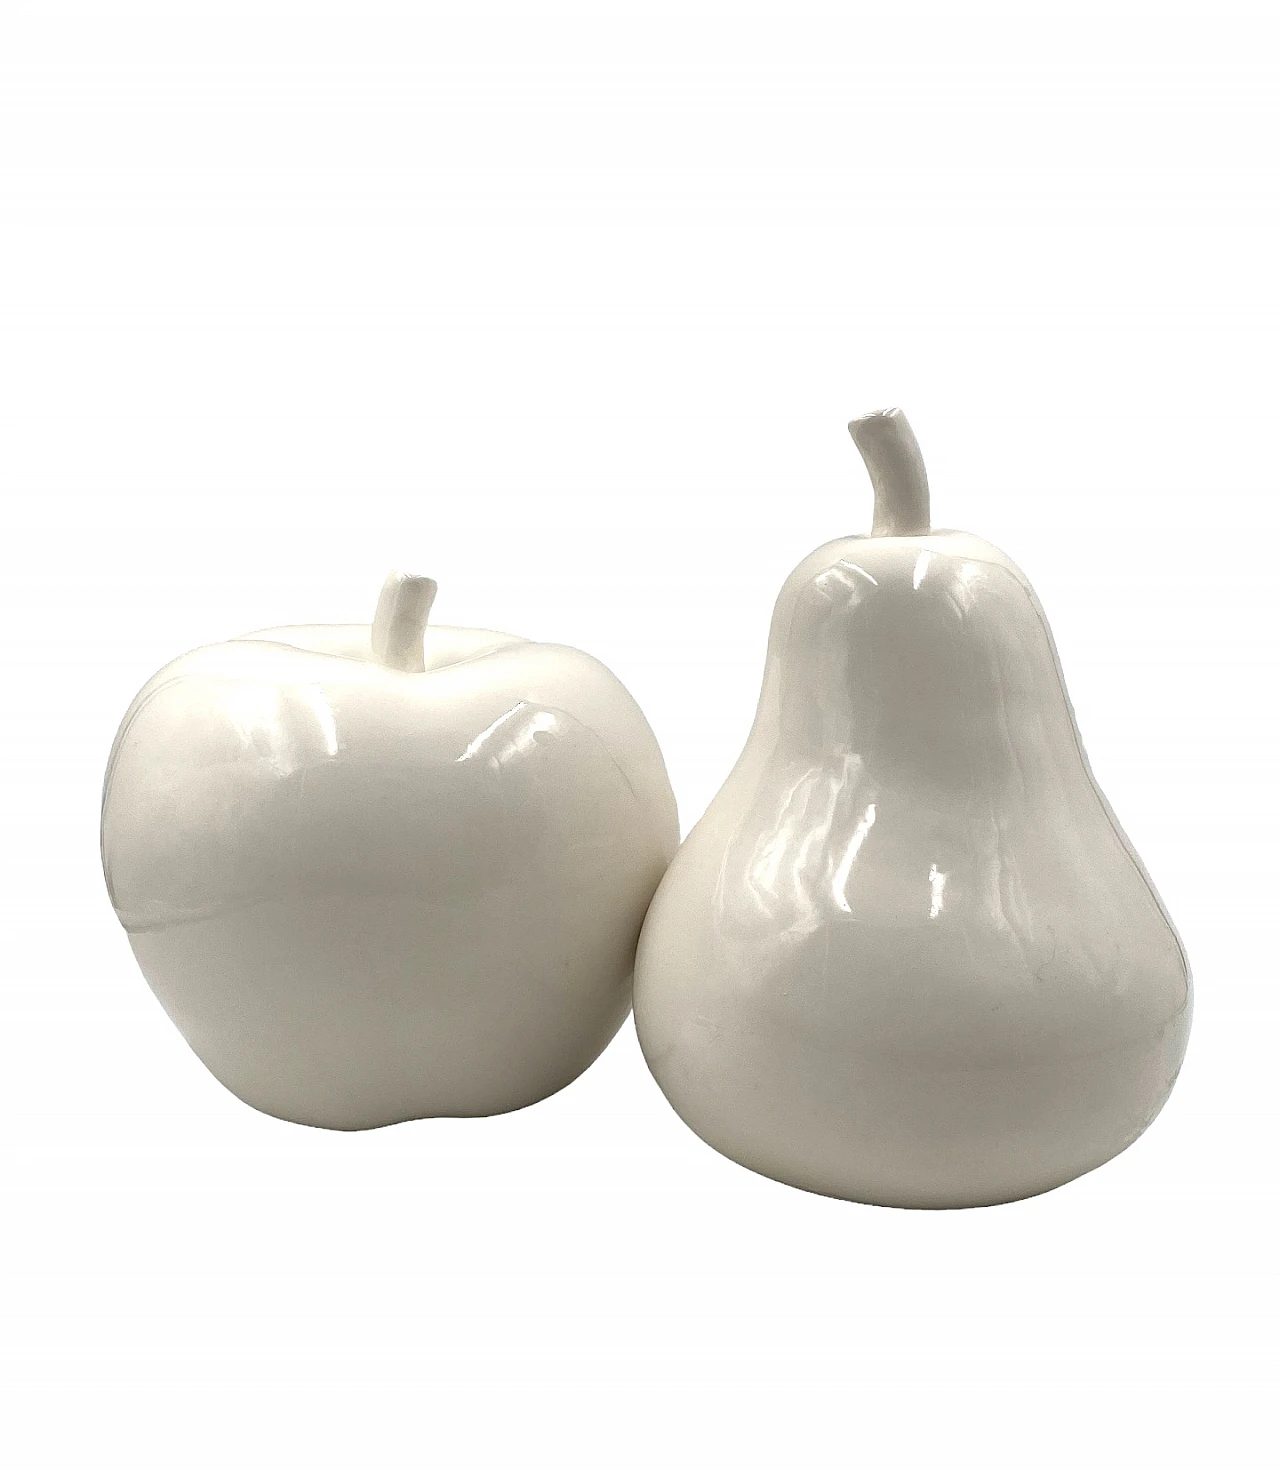 White ceramic apple & pear sculptures, 1980s 1